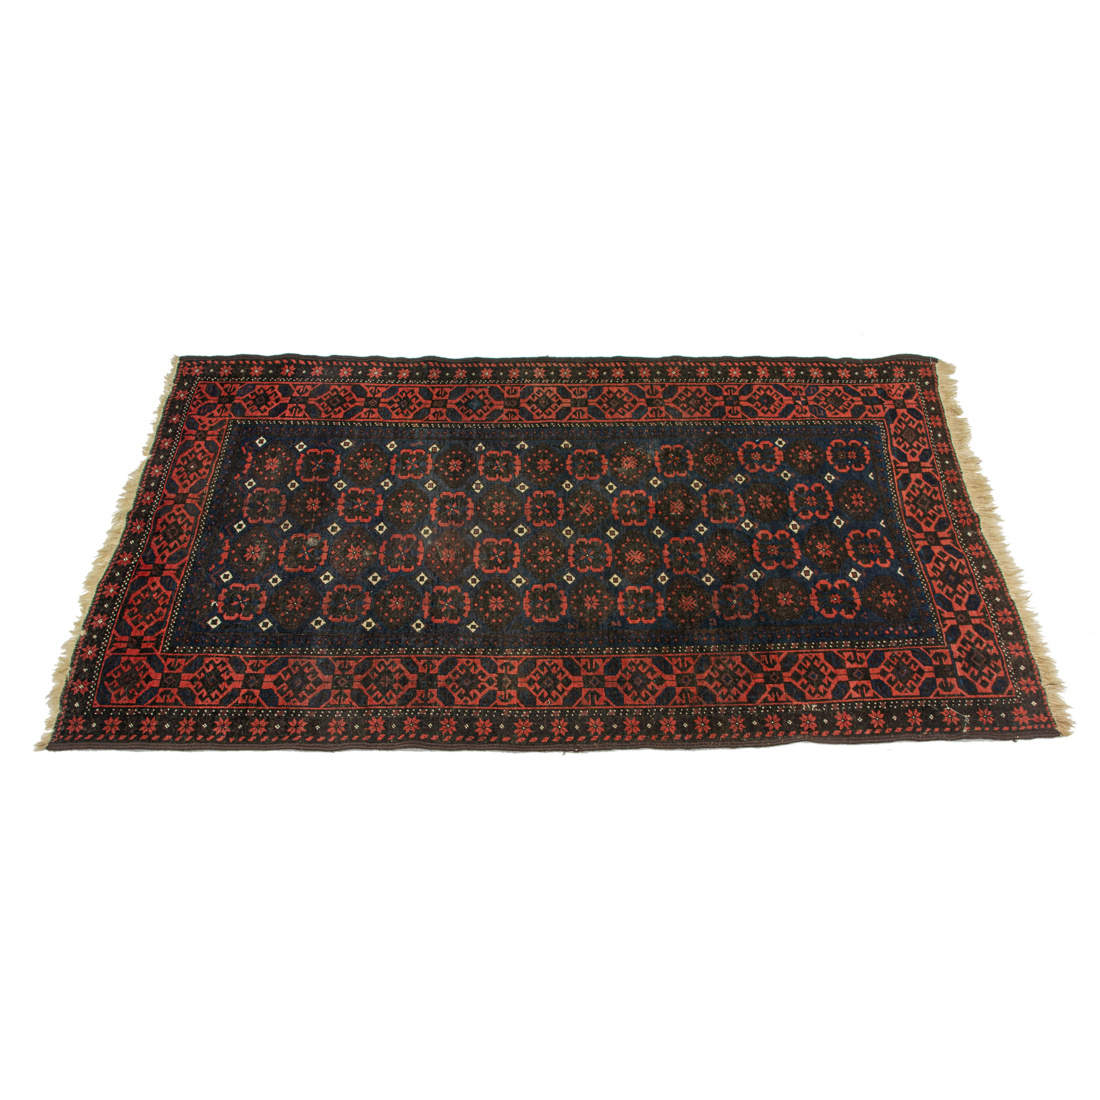 AN AFGHAN CARPET An Afghan carpet  3b41a9